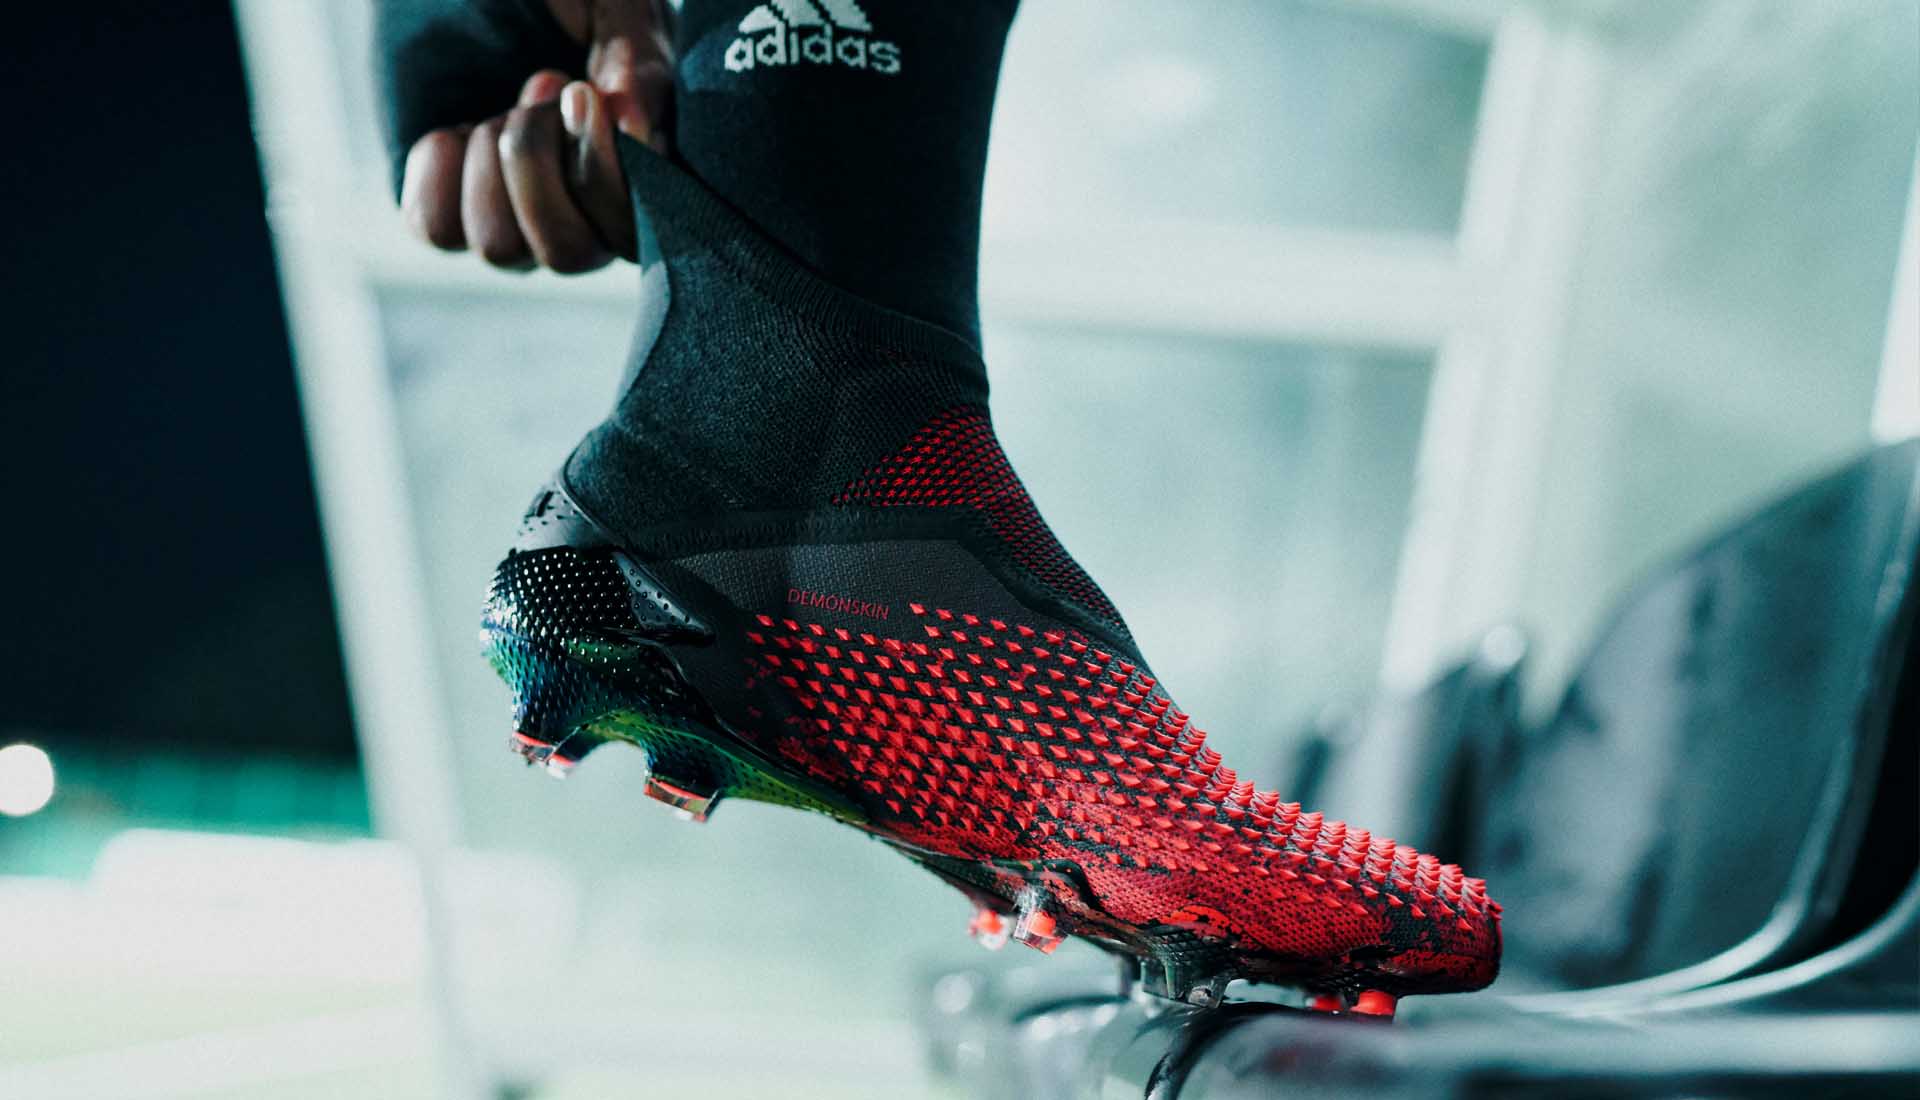 Thiết kế cổ thun ôm chân của giày bóng đá Adidas Predator 20+